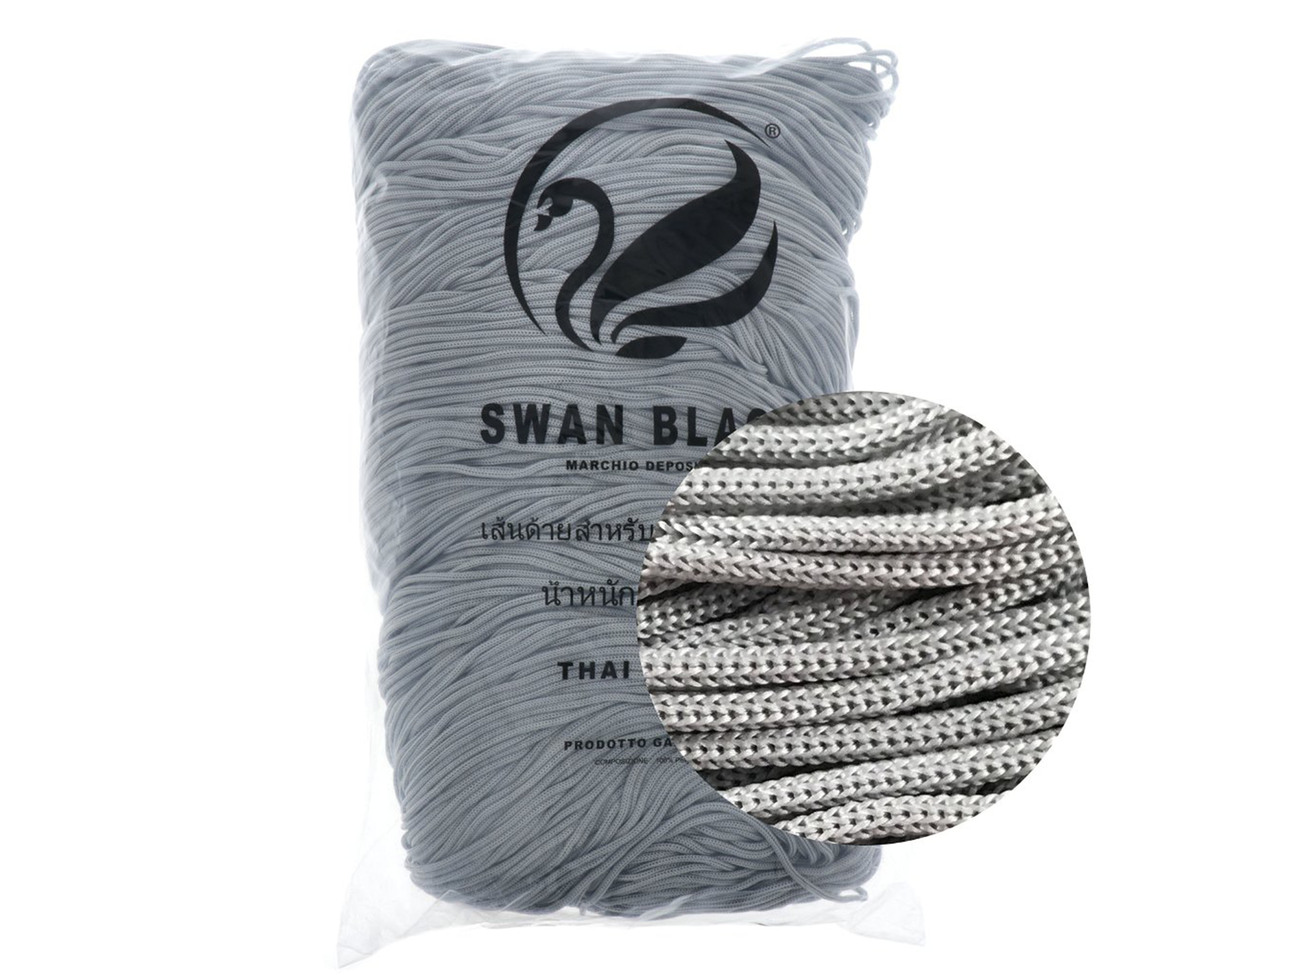 Cordino Thai Swan Black 500 grammi Tre Sfere Colore Grigio perla-029